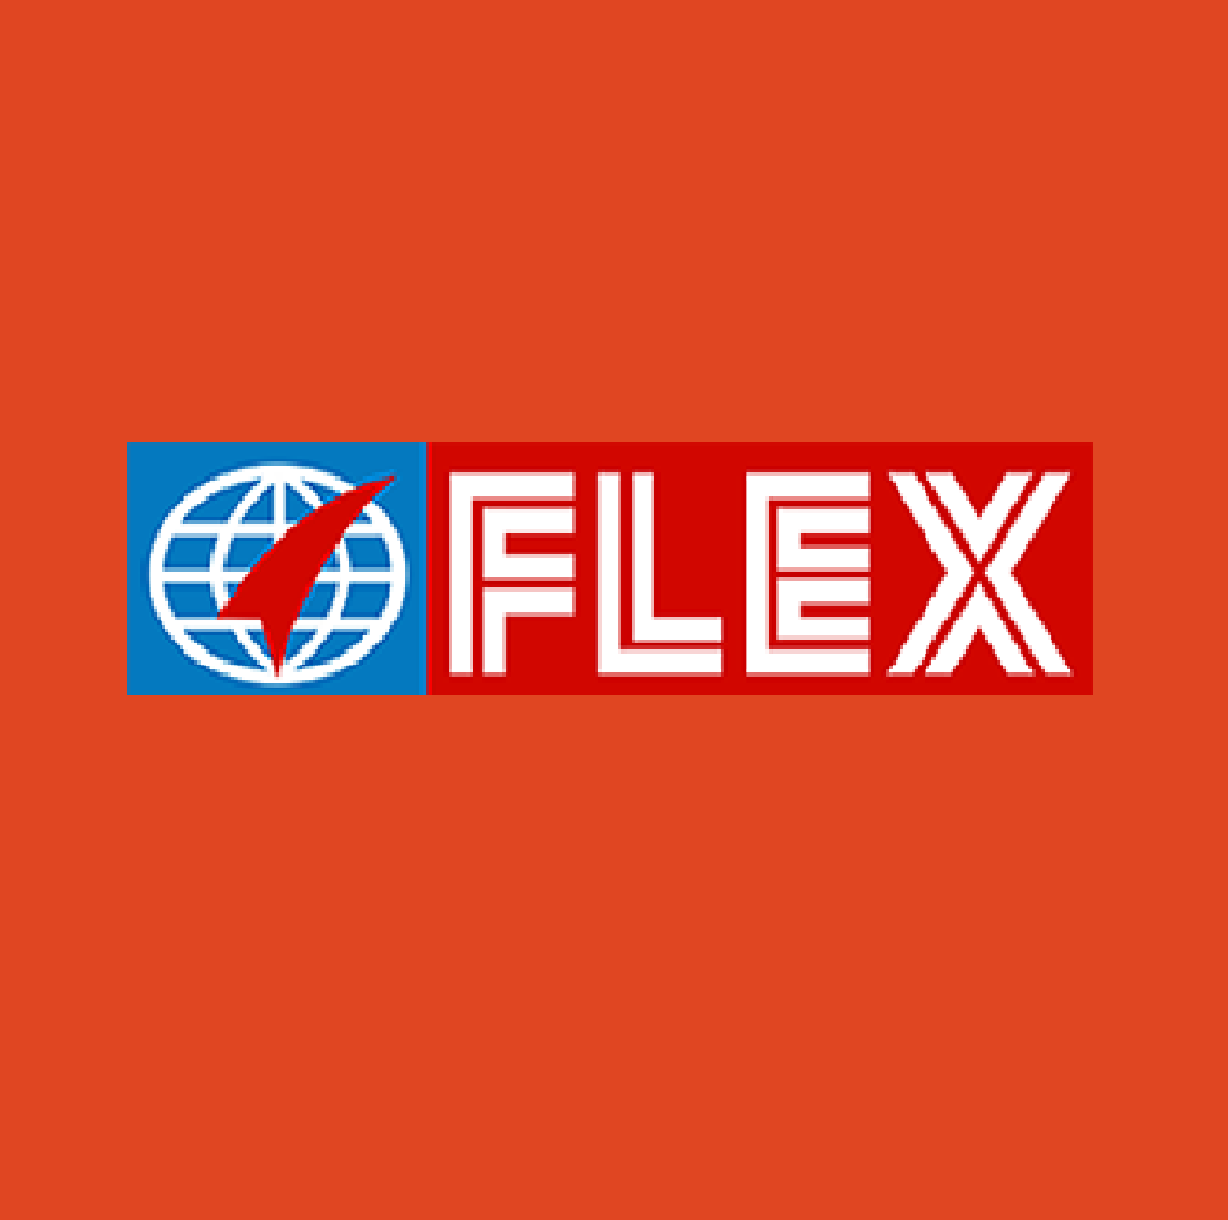 Flex Films Egypt